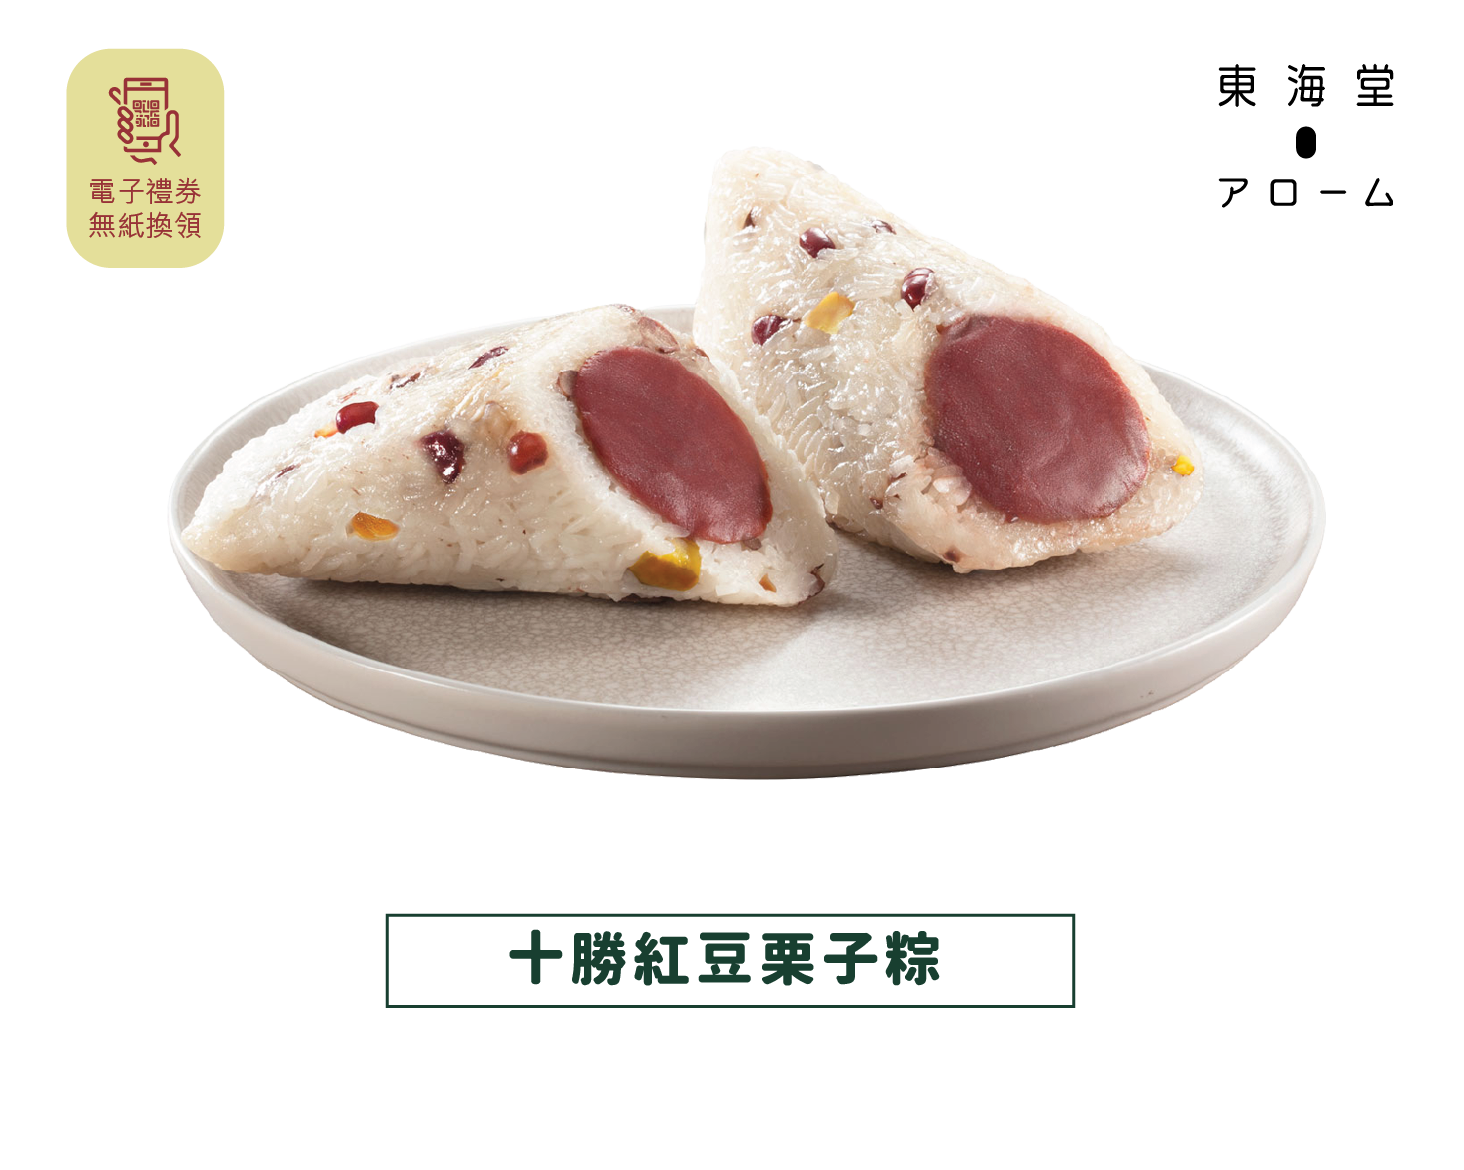 [JLL Offer] Arome | Tokachi Red Bean Chestnut Rice Dumpling e-Voucher